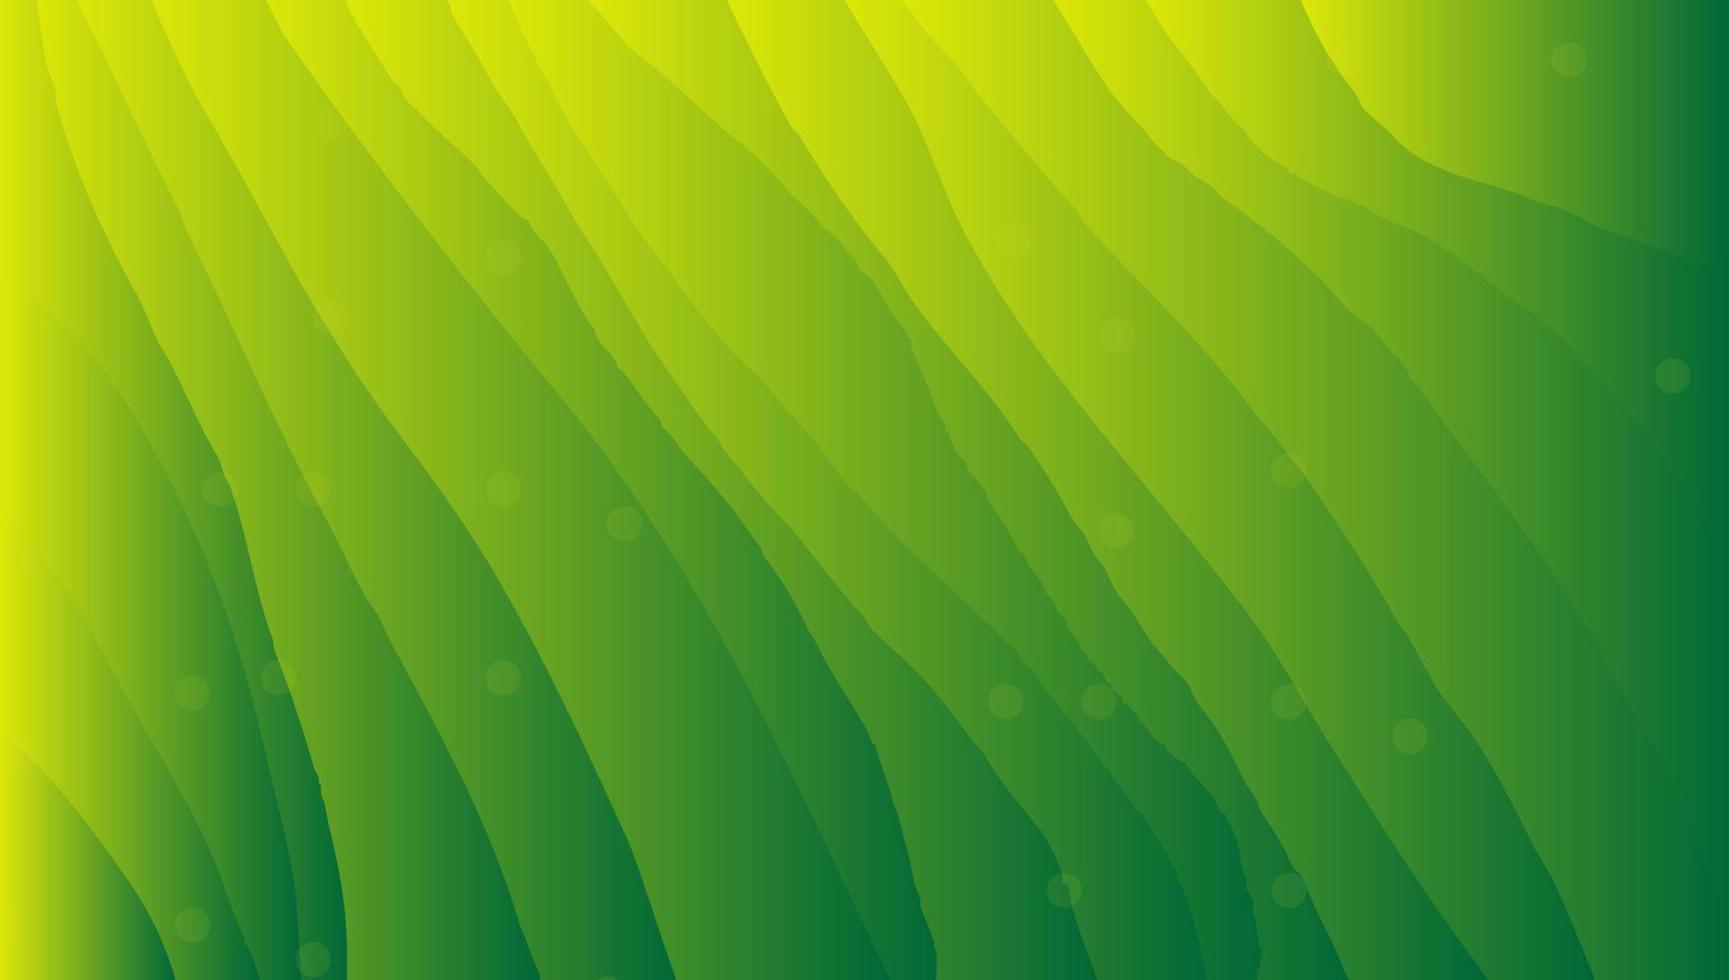 vecteur de fond de ligne irrégulière de couleur jaune vert.